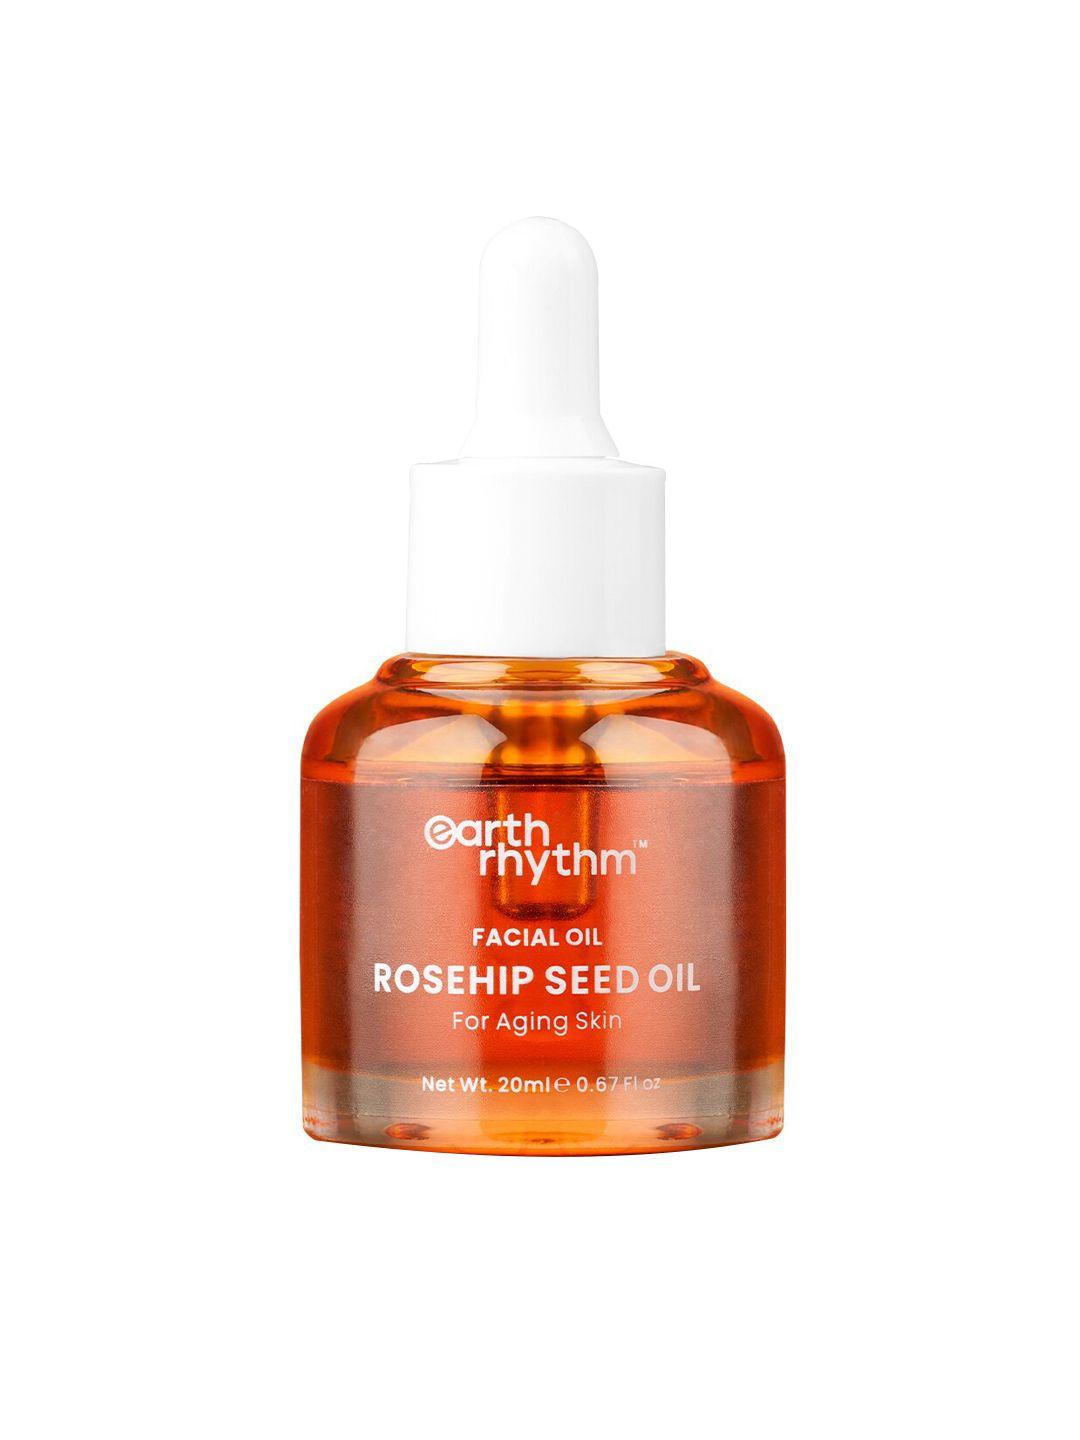 earth rhythm rosehip seed facial oil with vitamin e - 20 ml